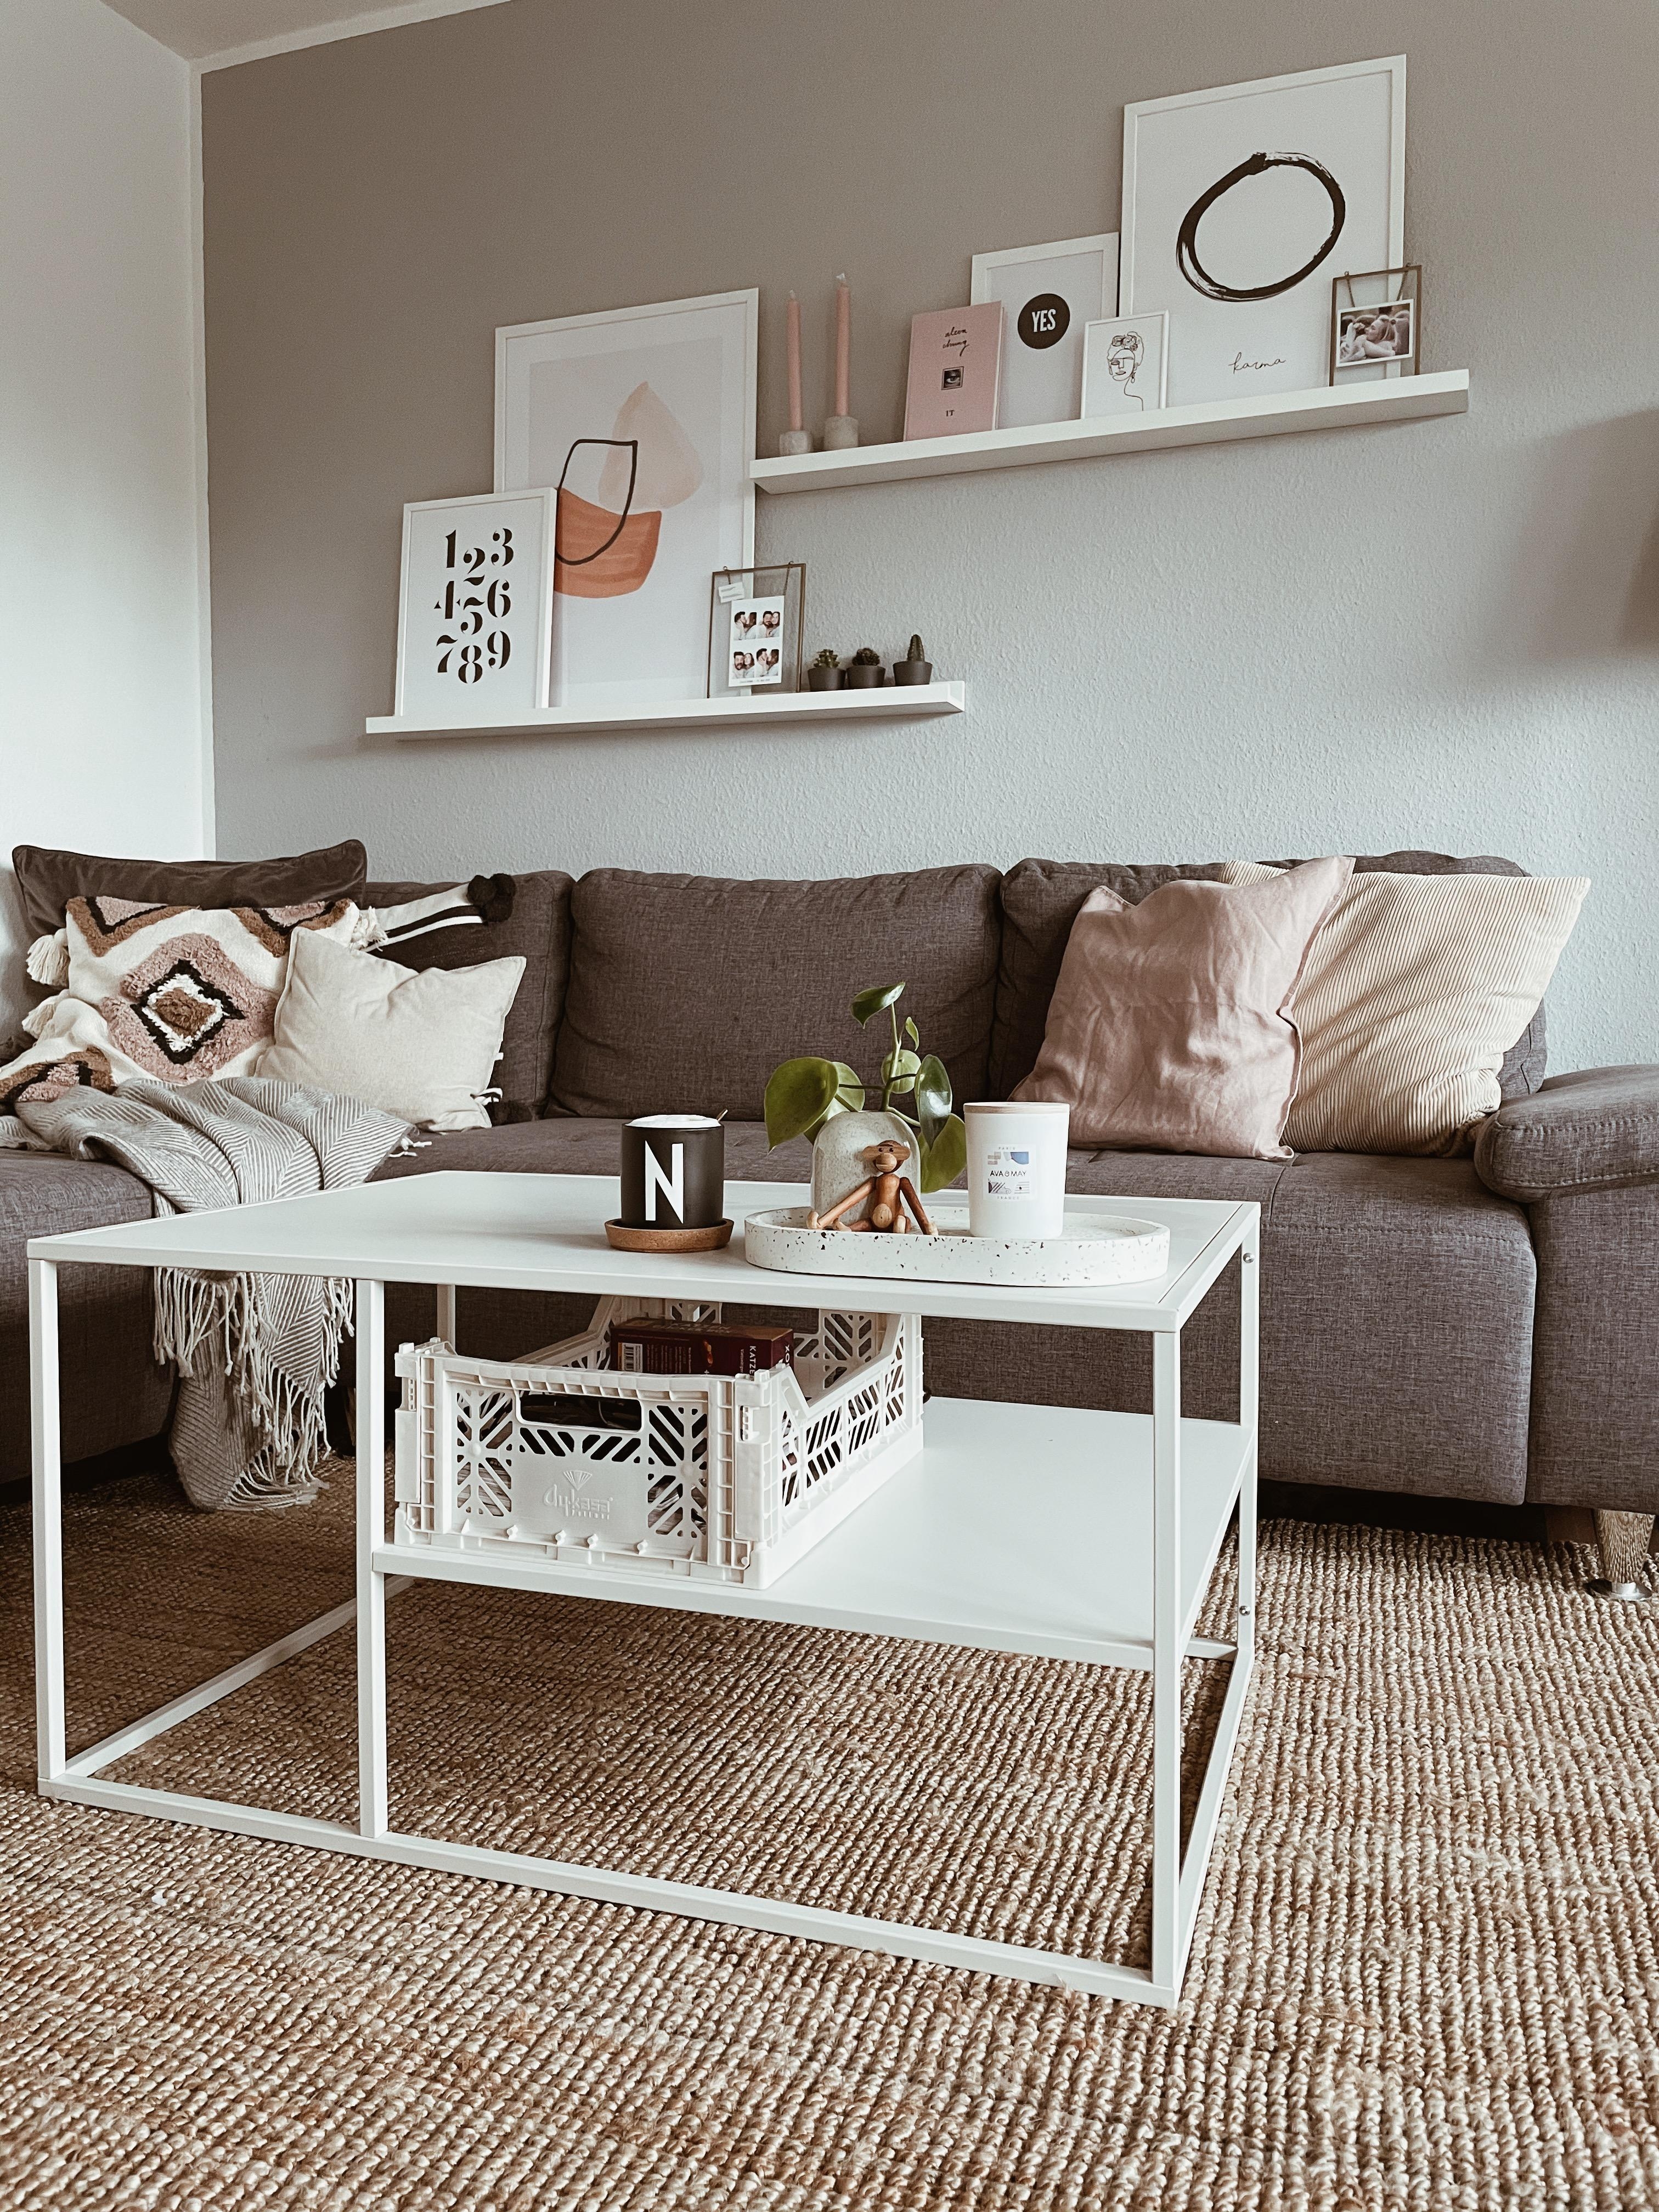 Wohnzimmerliebe 🤍
#wohnzimmer #interior #cozy #cozyhome #couchstyle 